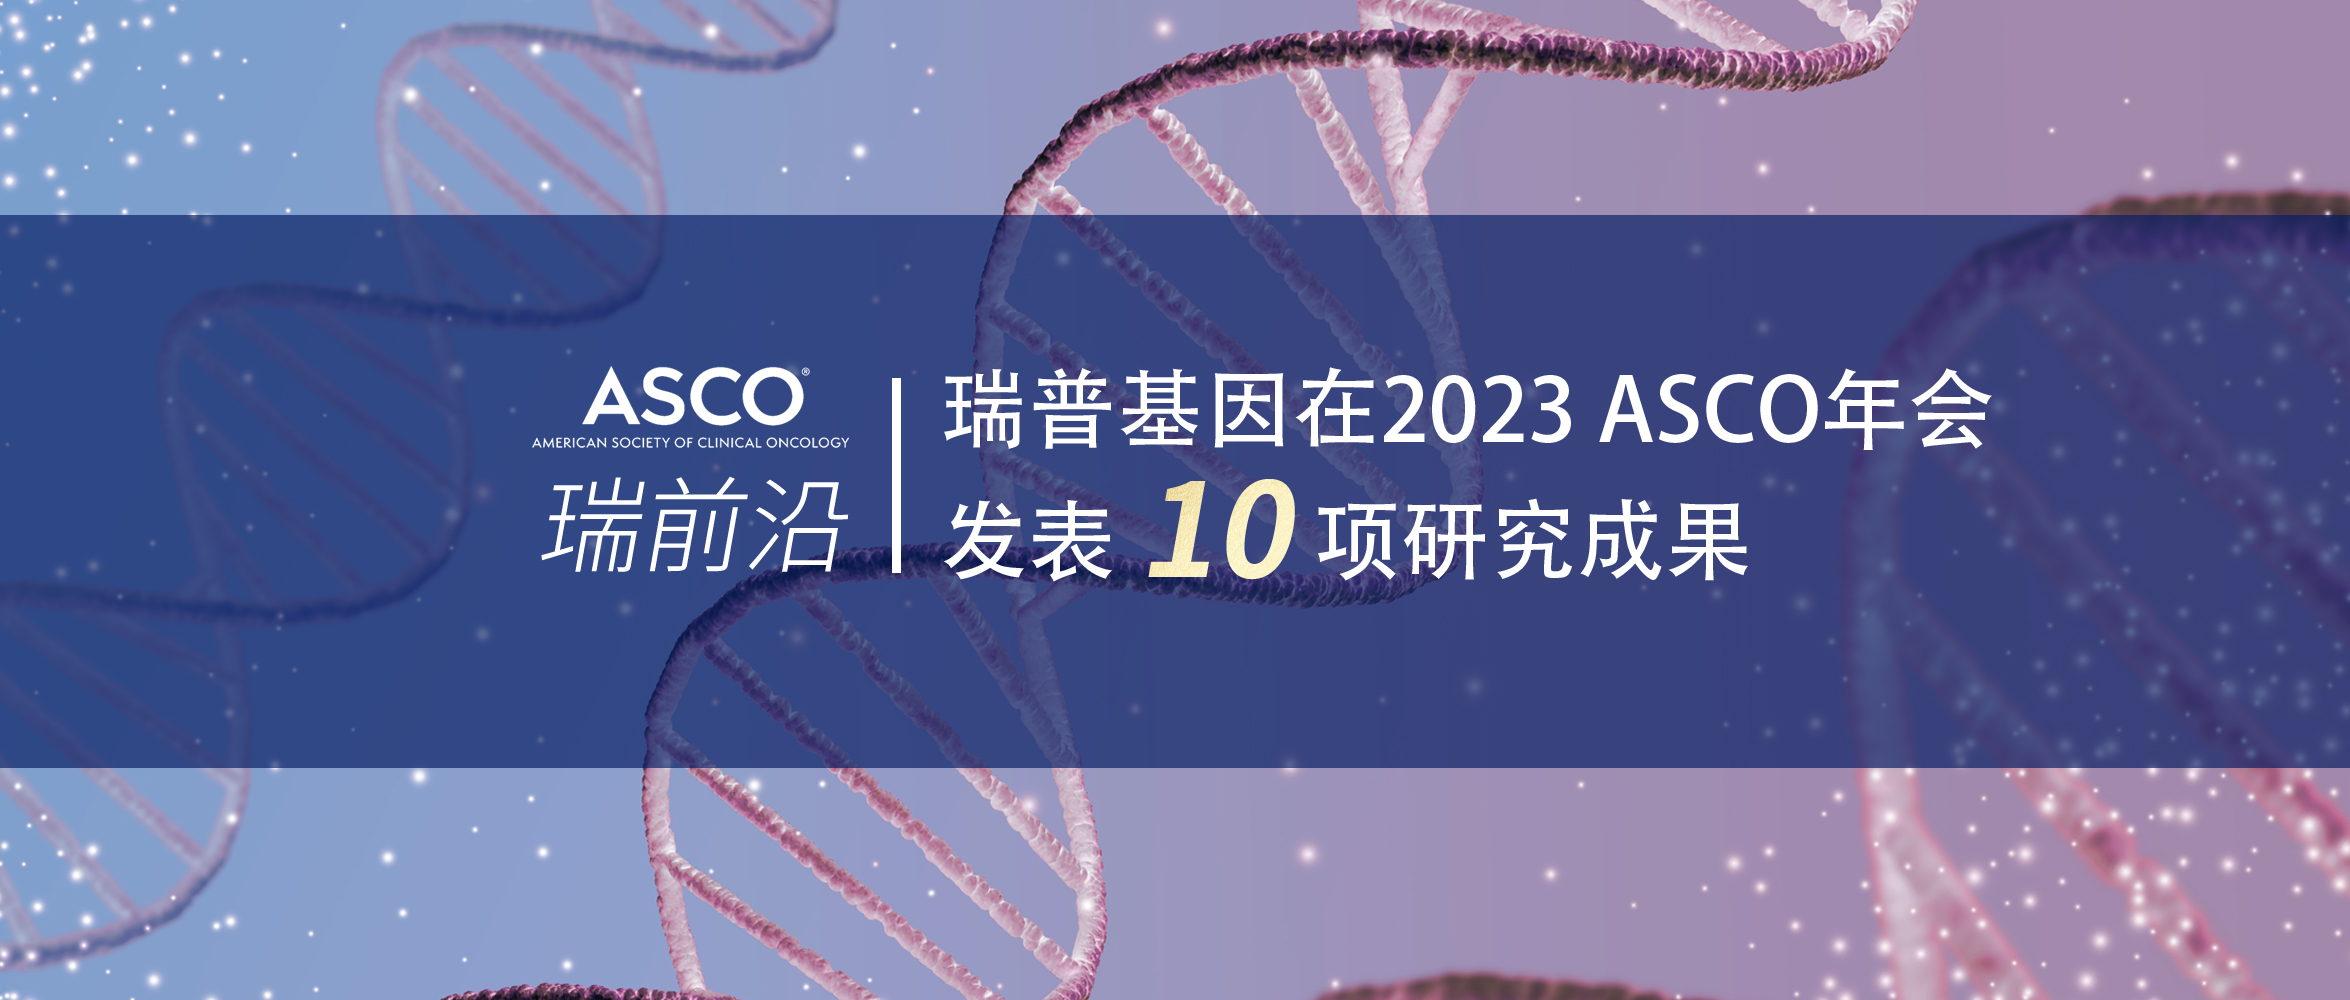 威尼斯娱人城官网在2023 ASCO年会发表10项研究